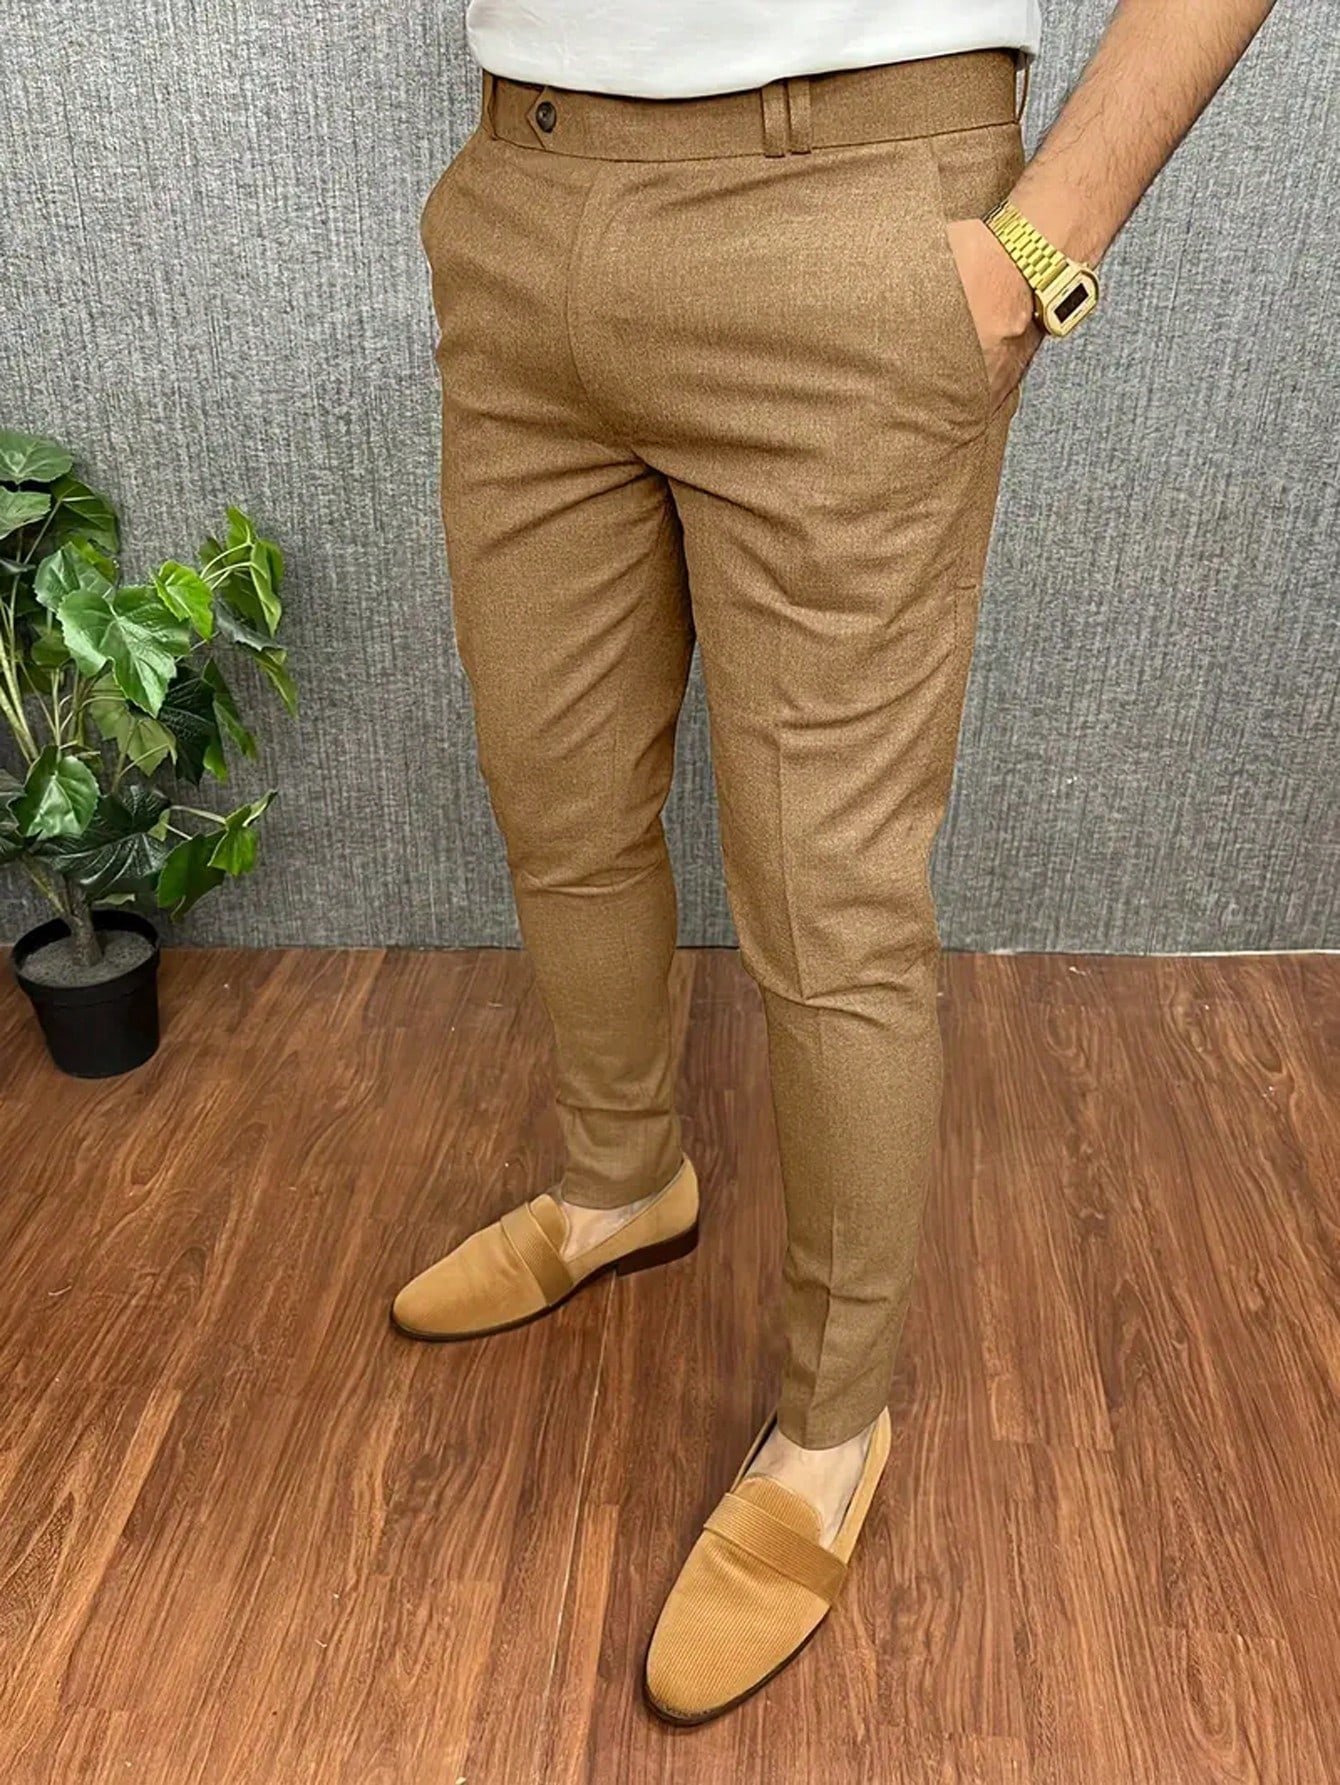 брюки мужские приталенные деловые повседневные костюмные штаны офисные брюки универсальные 28 36 glestore Мужские повседневные костюмные брюки, имбирь